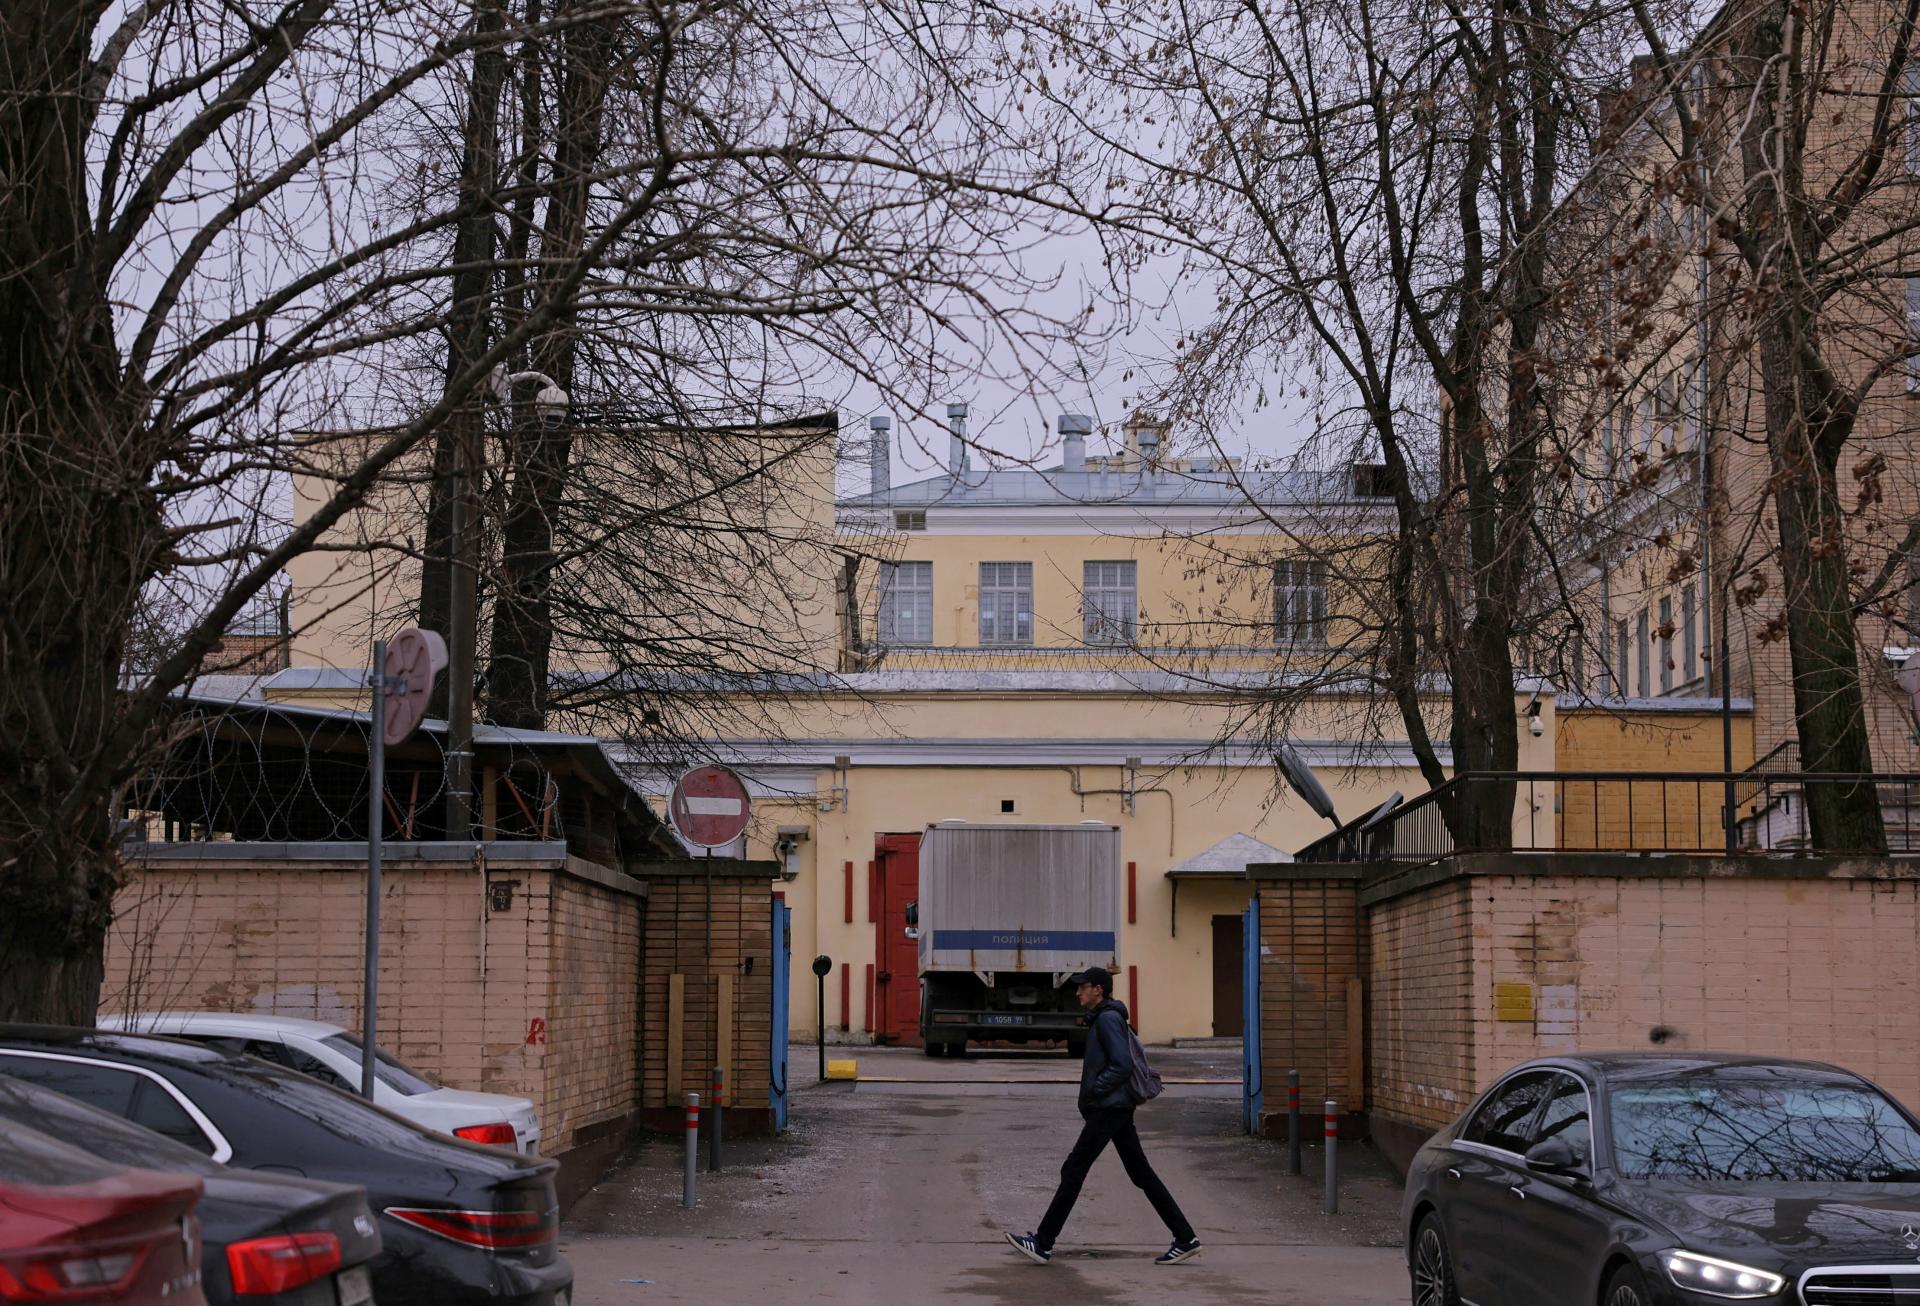 Obávané moskovské Lefortovo: väzenie, v ktorom Sovietsky zväz nikdy nezanikol